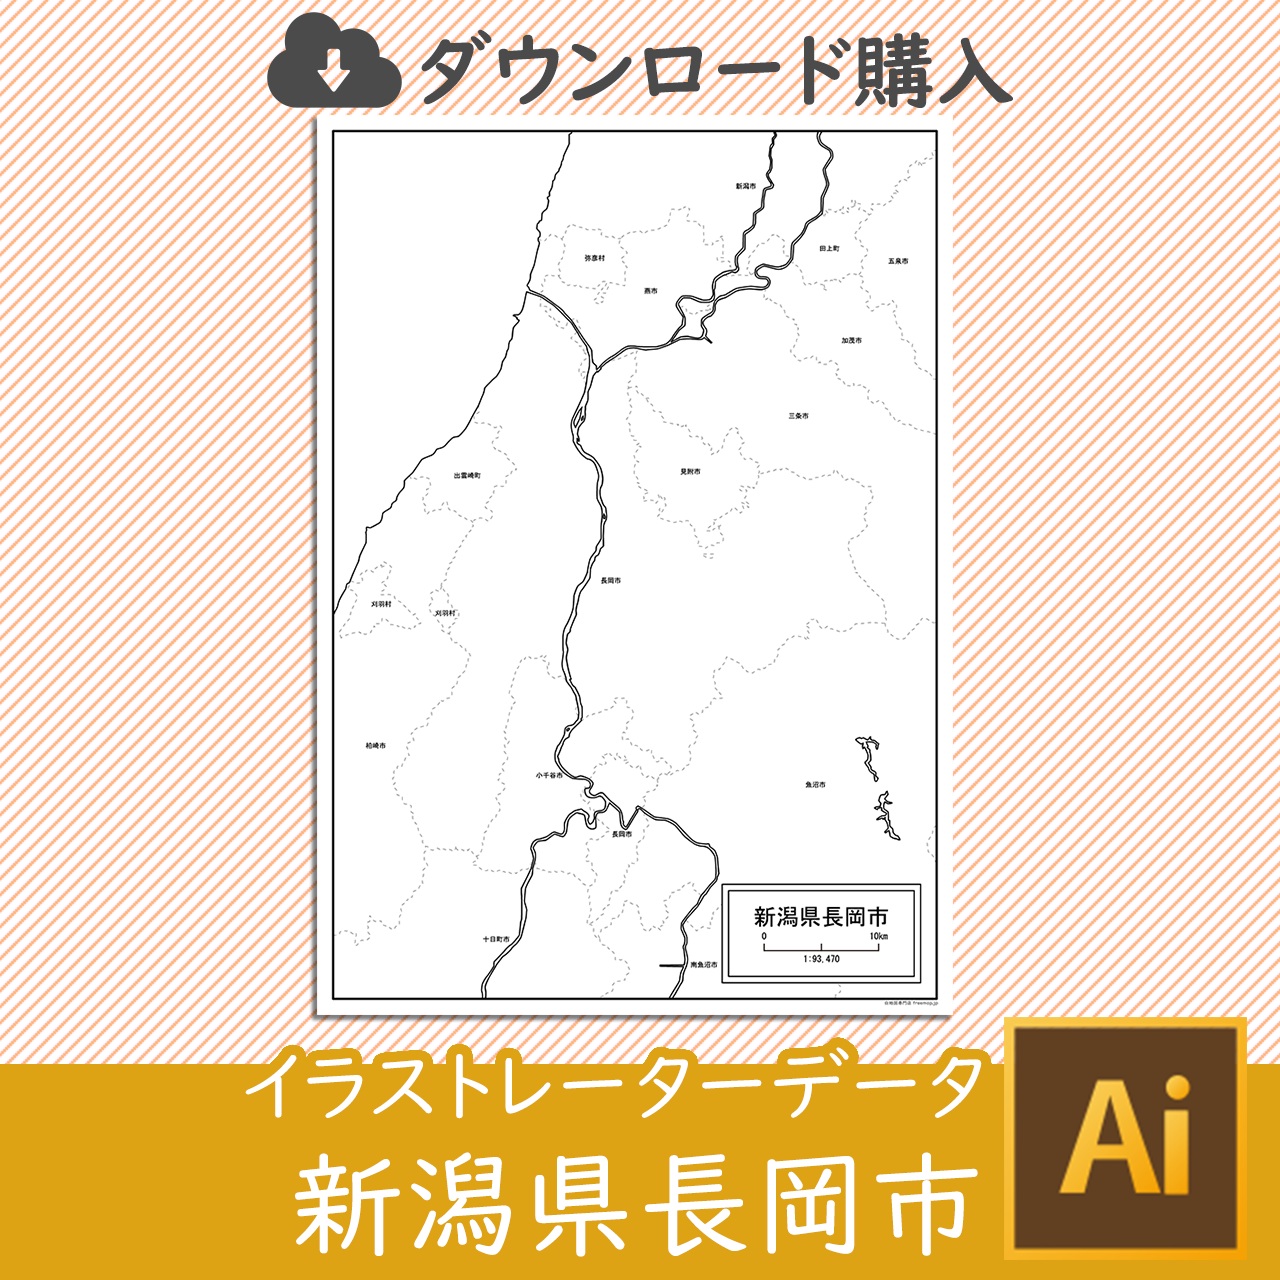 長岡市のaiデータのサムネイル画像